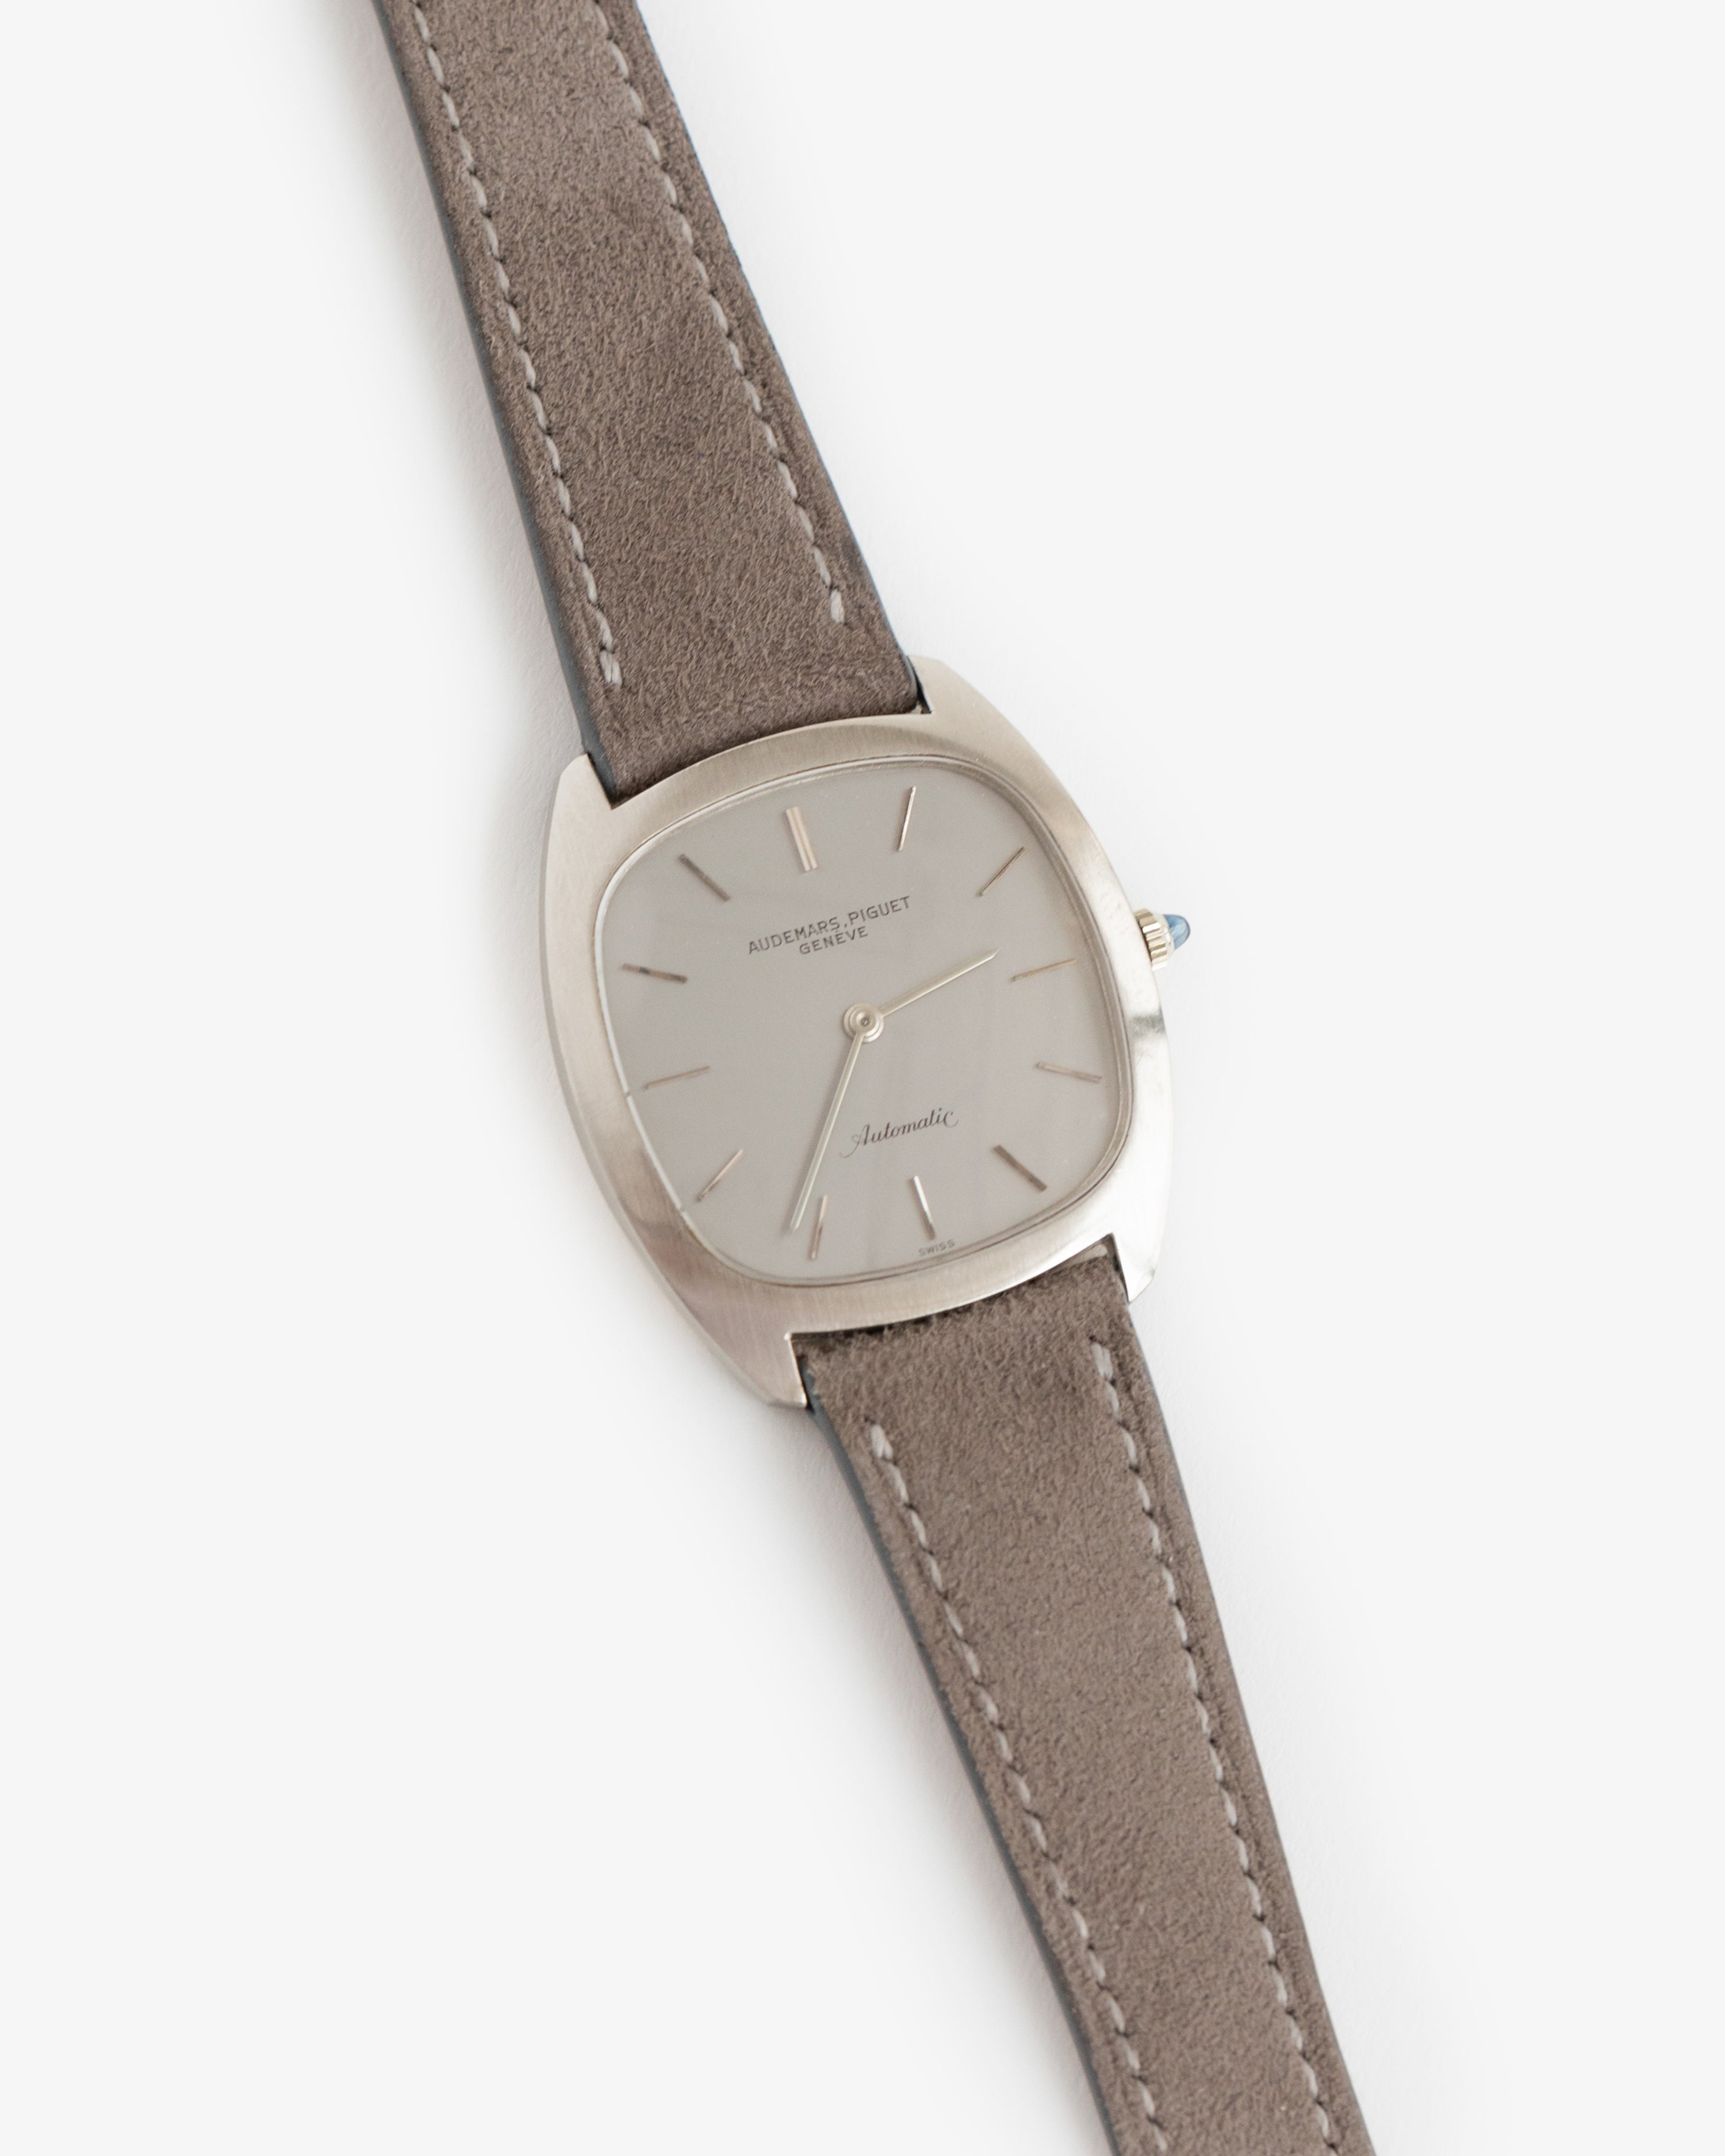 Vintage Audemars Piguet 14K Automatic Watch